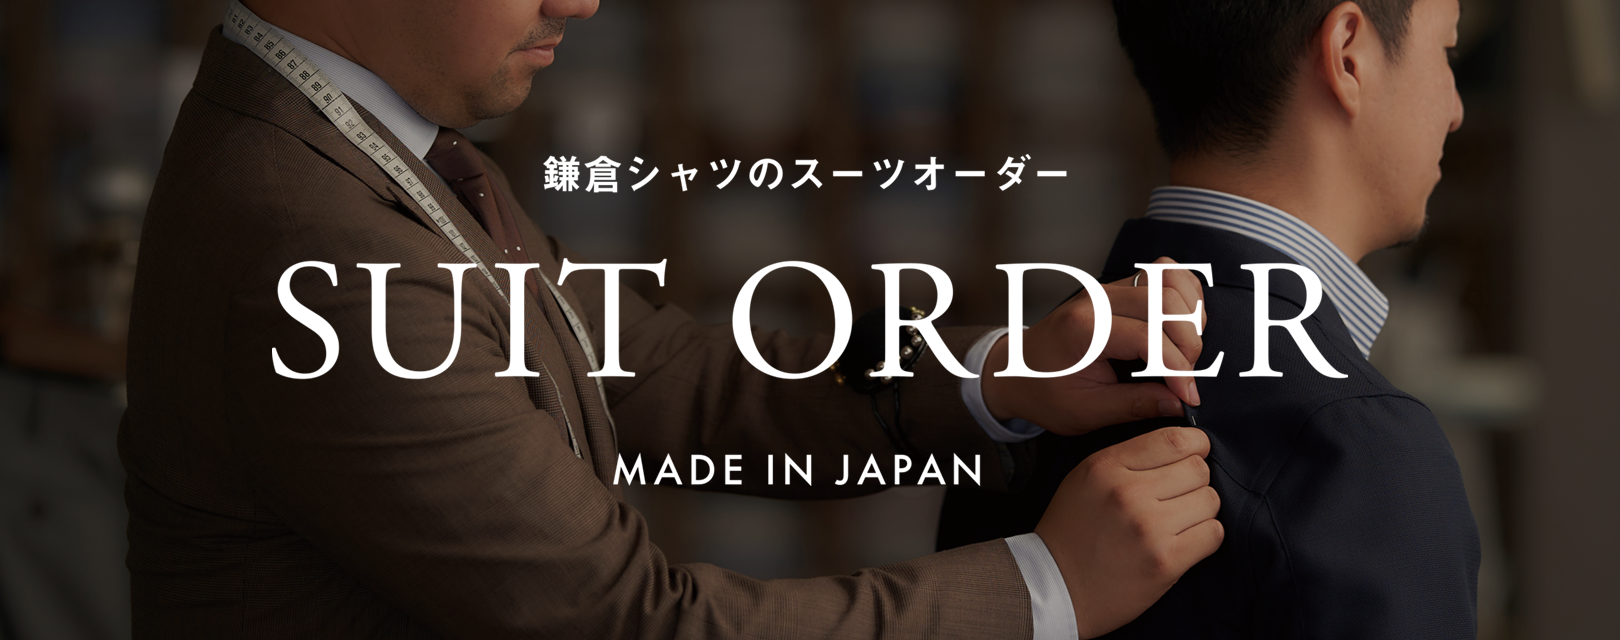 鎌倉シャツのスーツオーダー | メーカーズシャツ鎌倉 公式通販